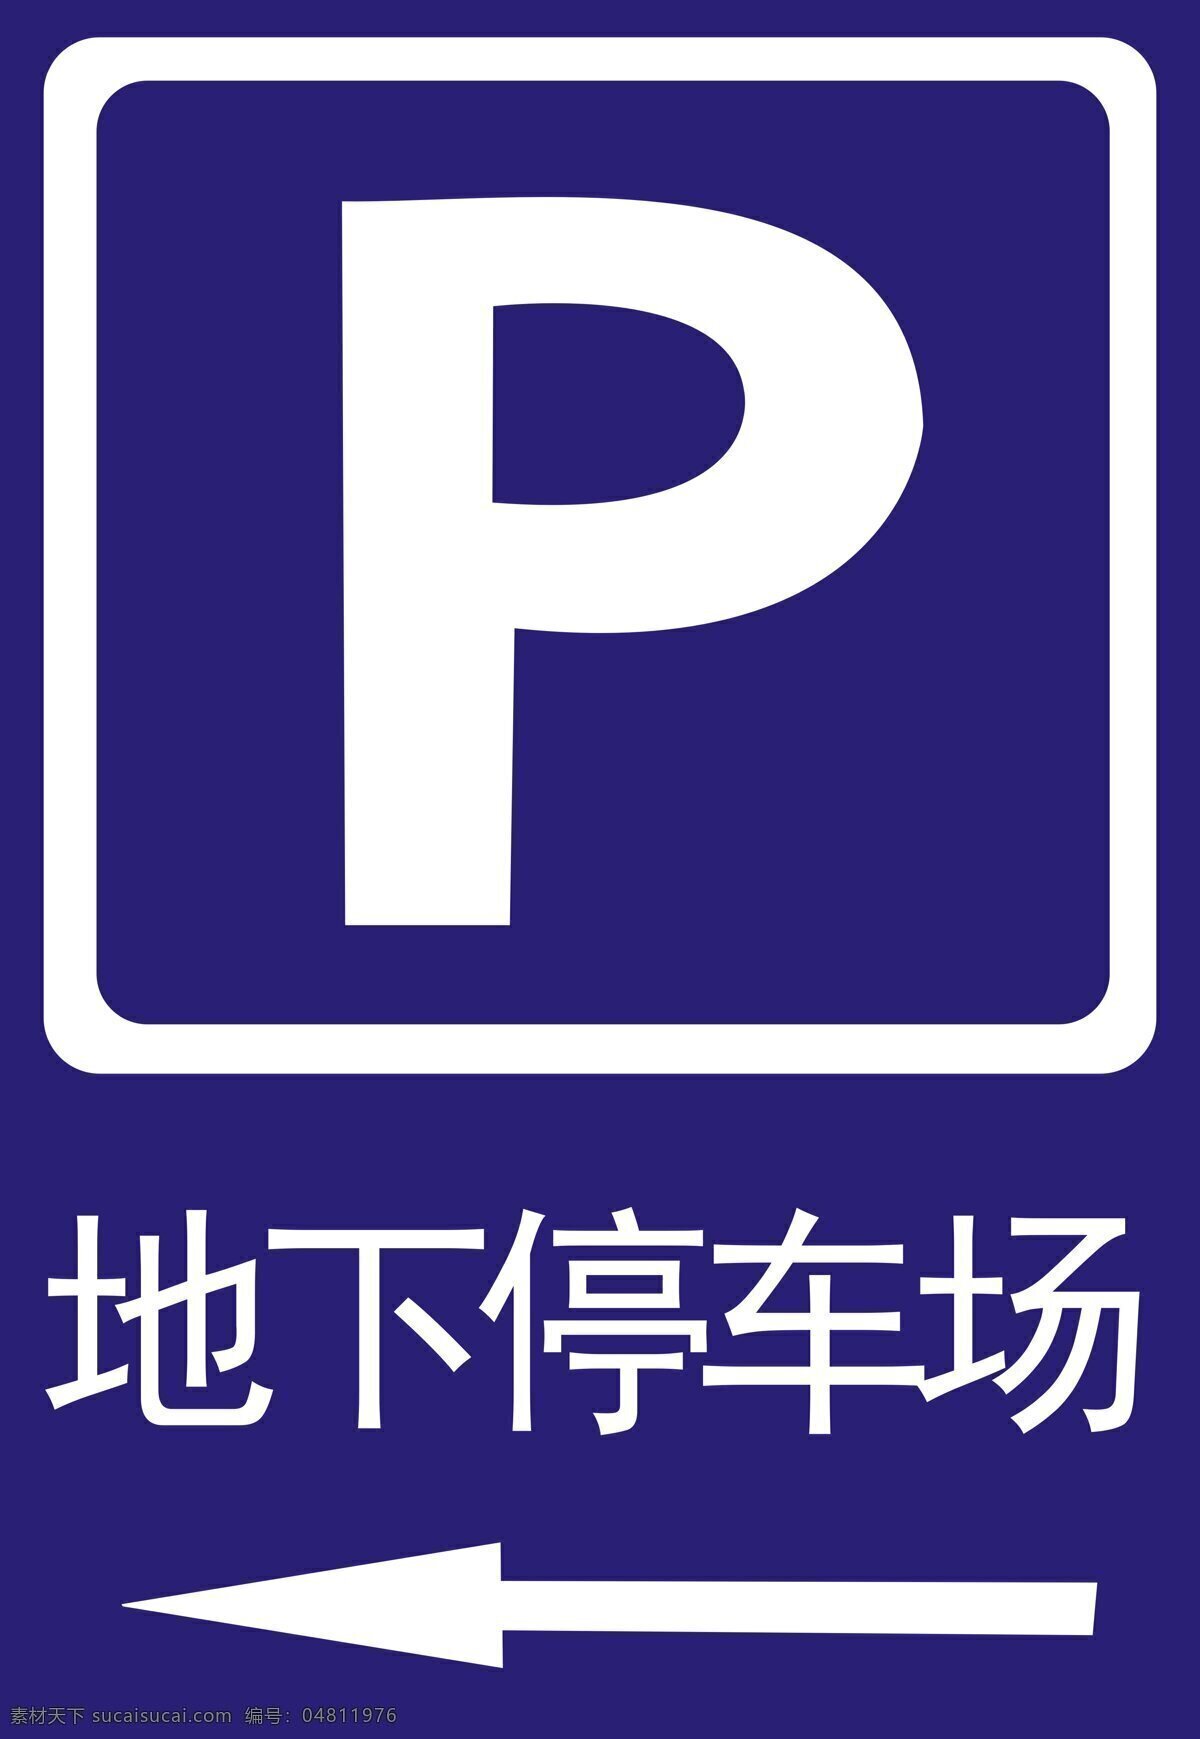 地下 停车场 标志 地下停车场 停车场标志 logo 交通标志